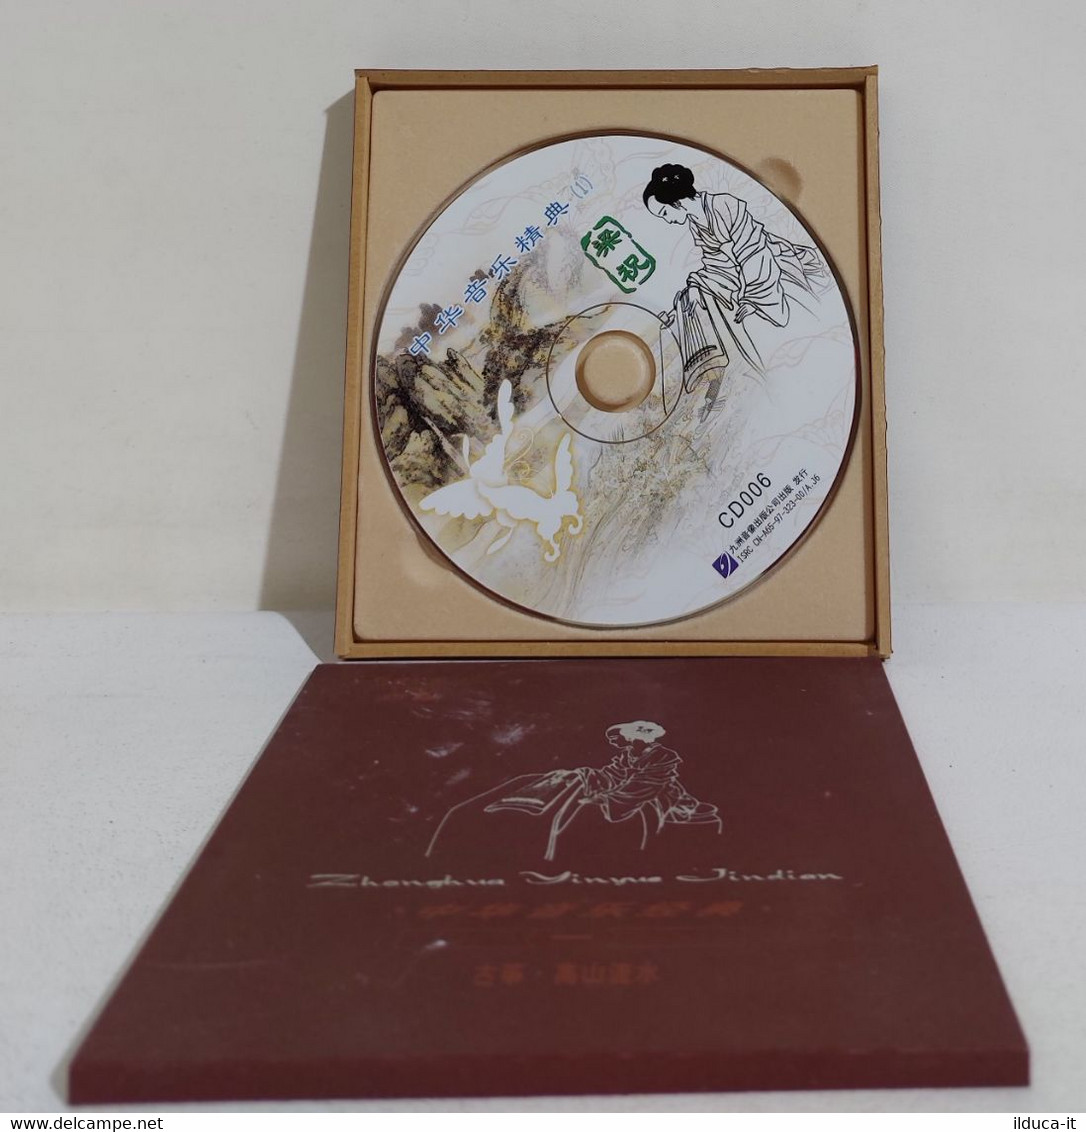 I108357 CD - ZONGHUA YINYUE JINDIAN - World Music